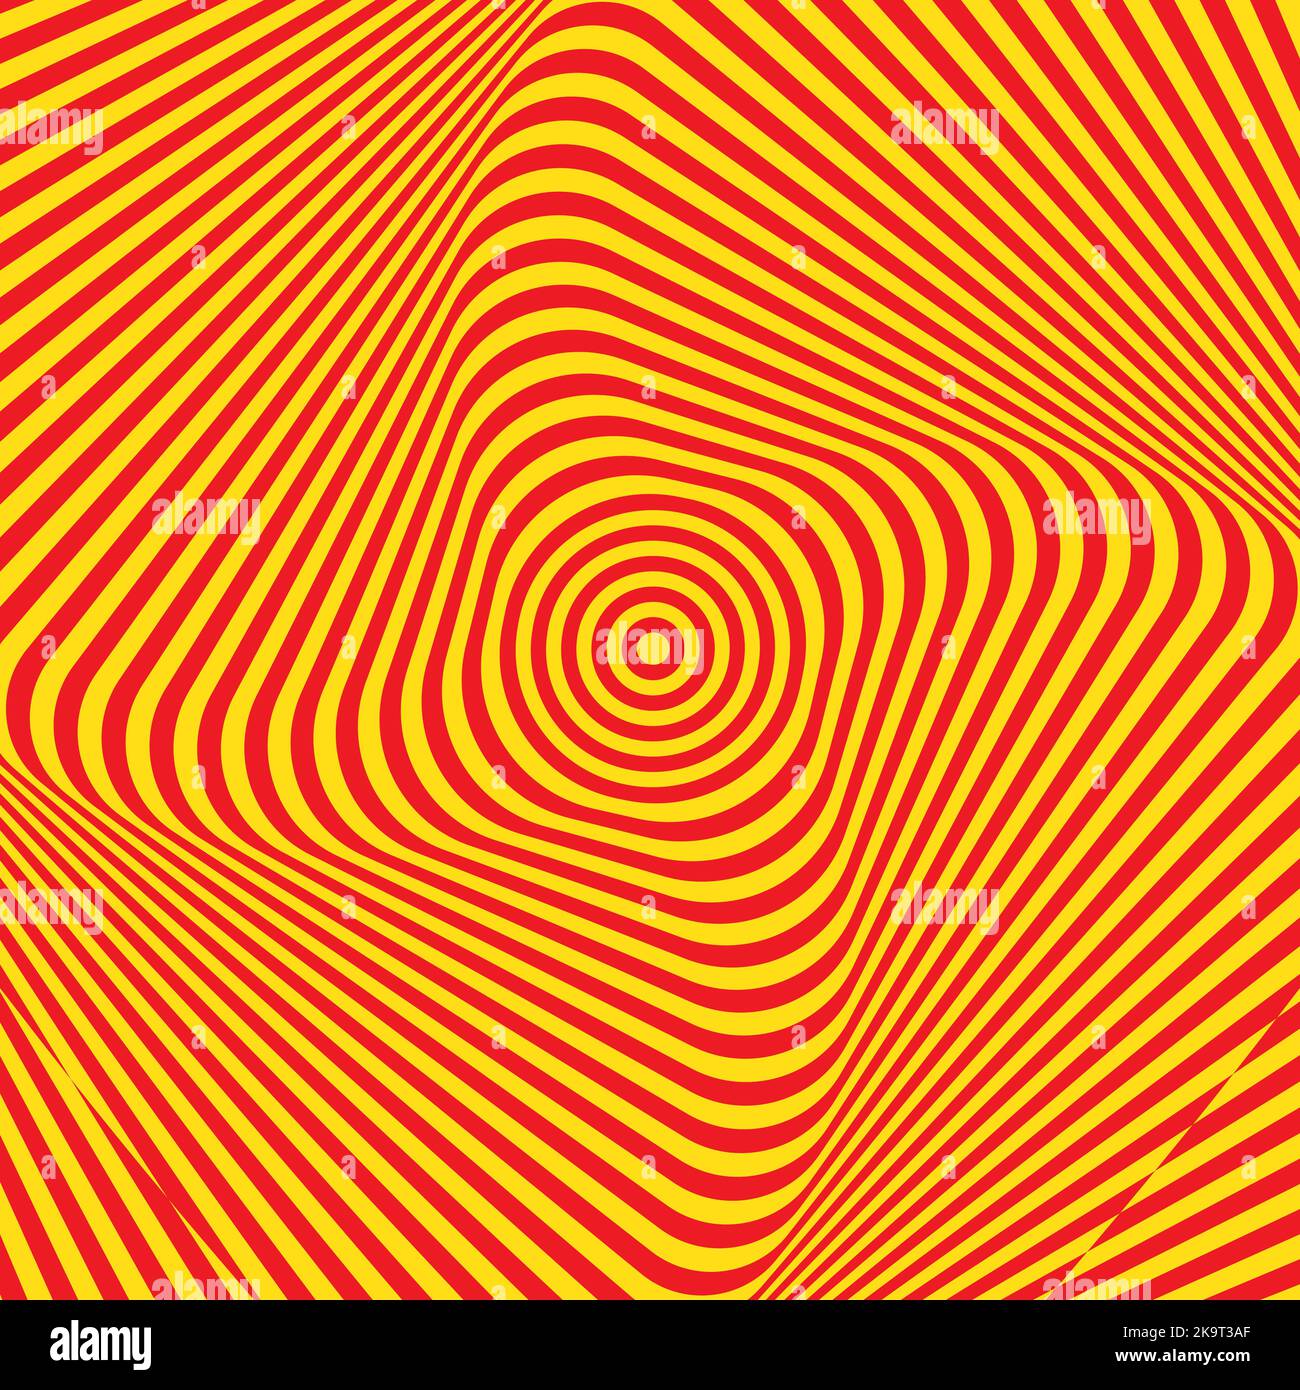 Abstrakt verdreht bunten Hintergrund. Optische Täuschung der verzerrten Oberfläche. Verdrehte rote und gelbe Streifen. Vektorgrafik. Stock Vektor